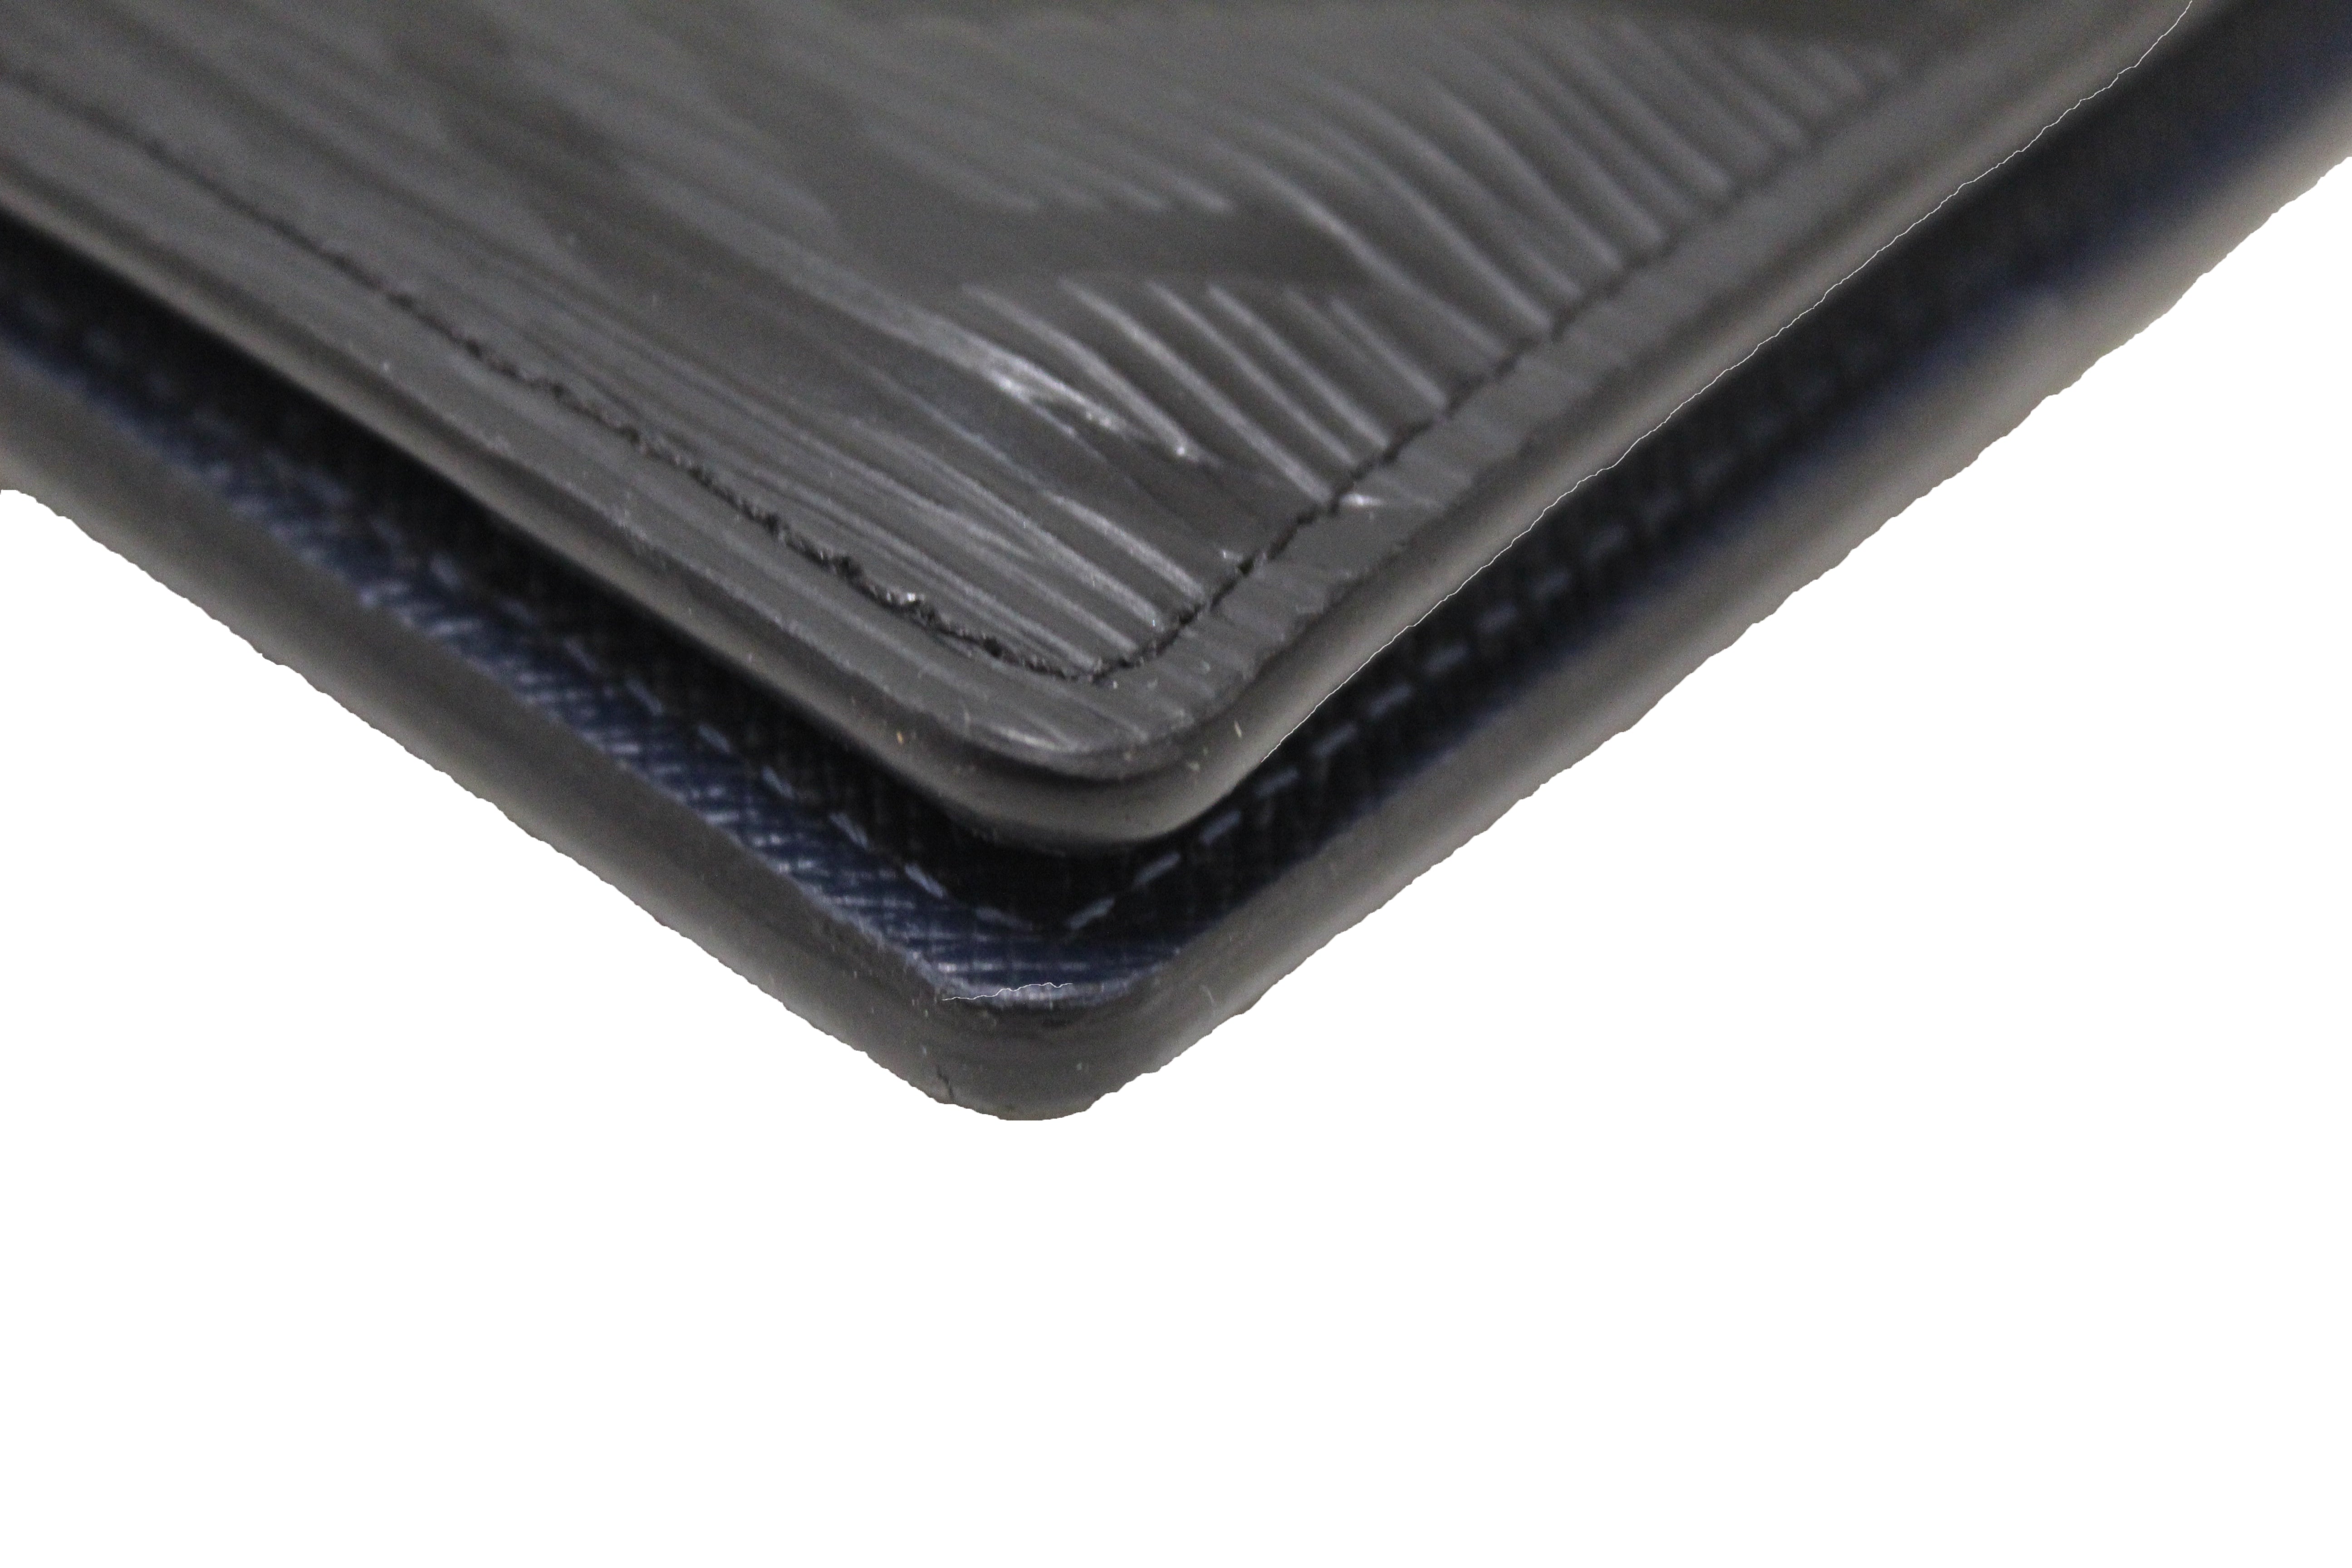 Louis Vuitton Epi Noir Pocket Organizer Leather Wallet (LOR